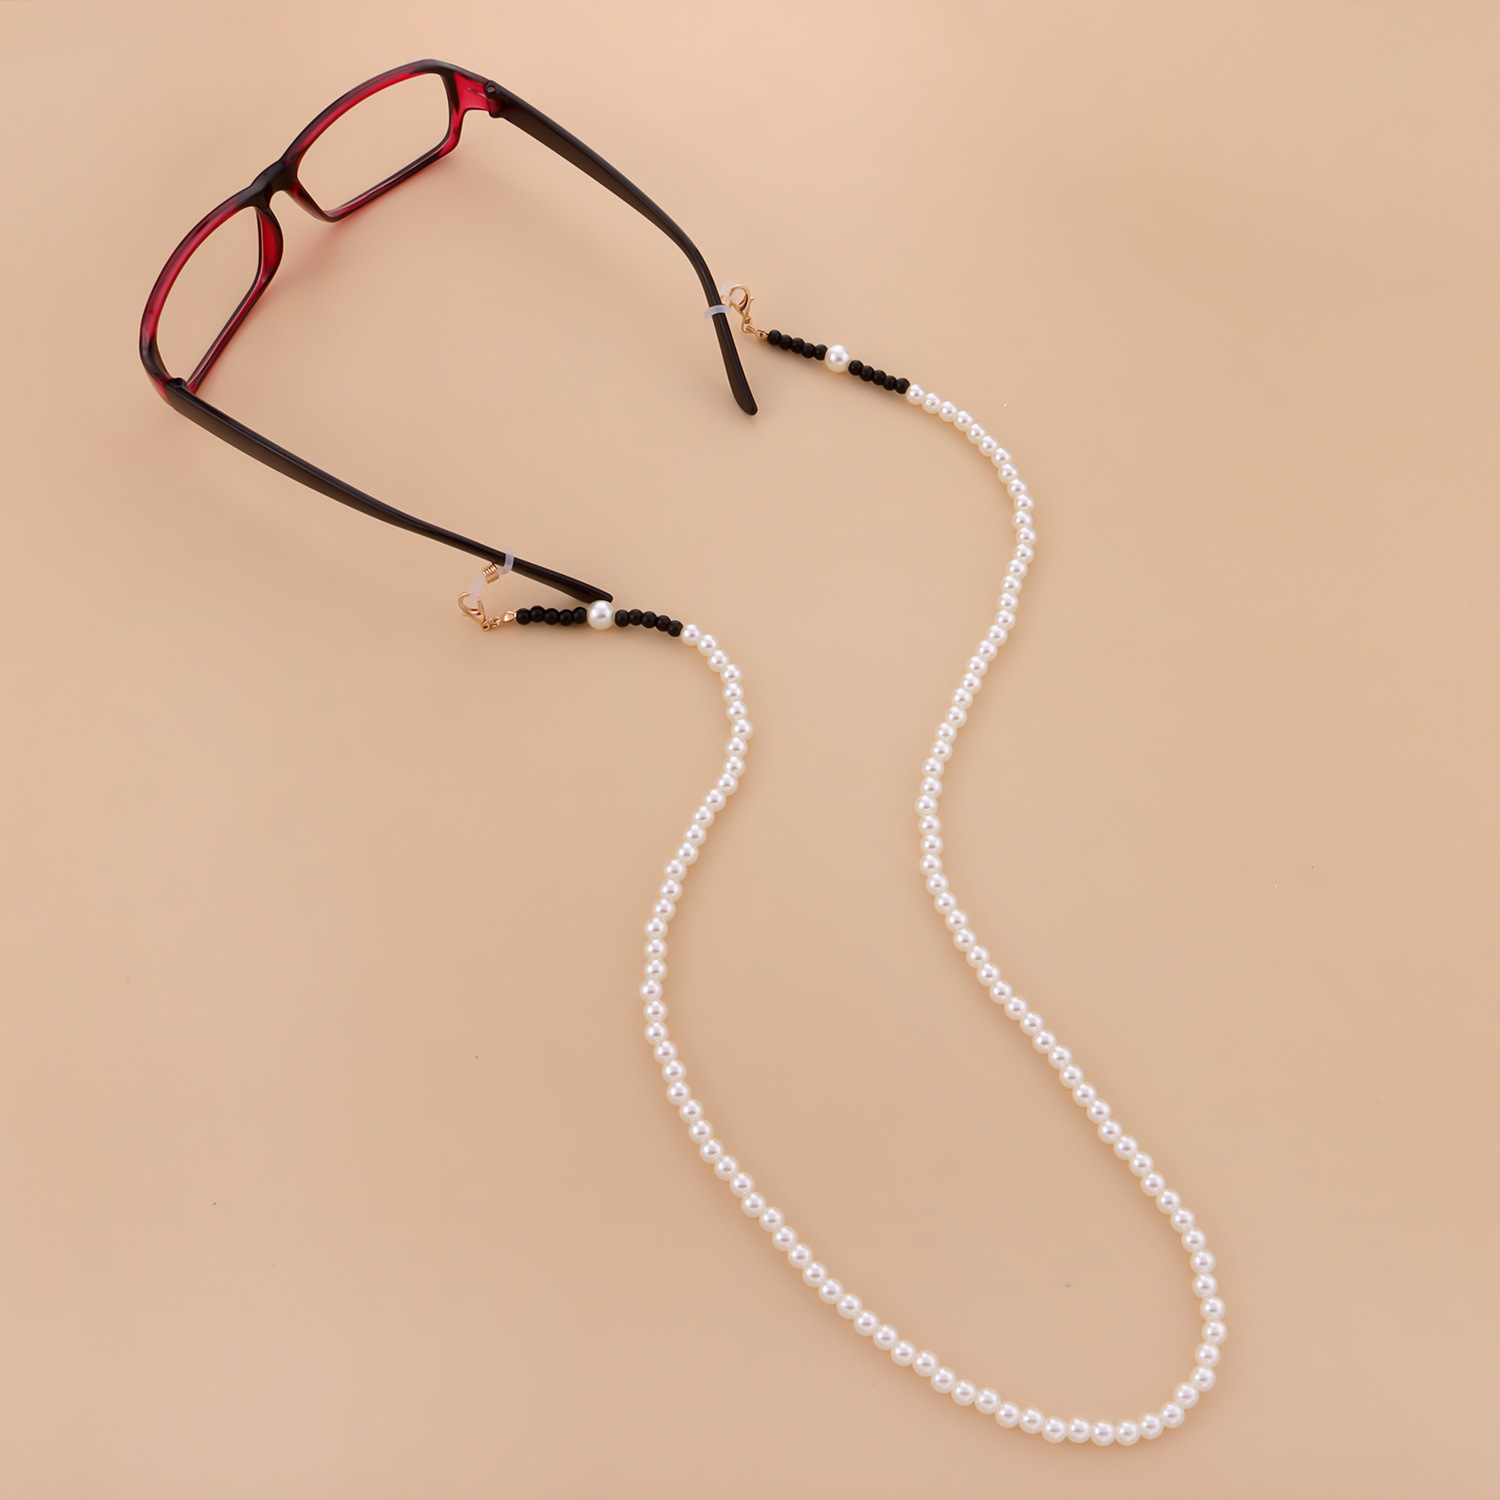 Chuỗi đeo kính hạt châu nhỏ mix màu đen trắng nổi bật đơn giản mà ấn tượng dây giữ khẩu trang chống thất lạc rơi rớt